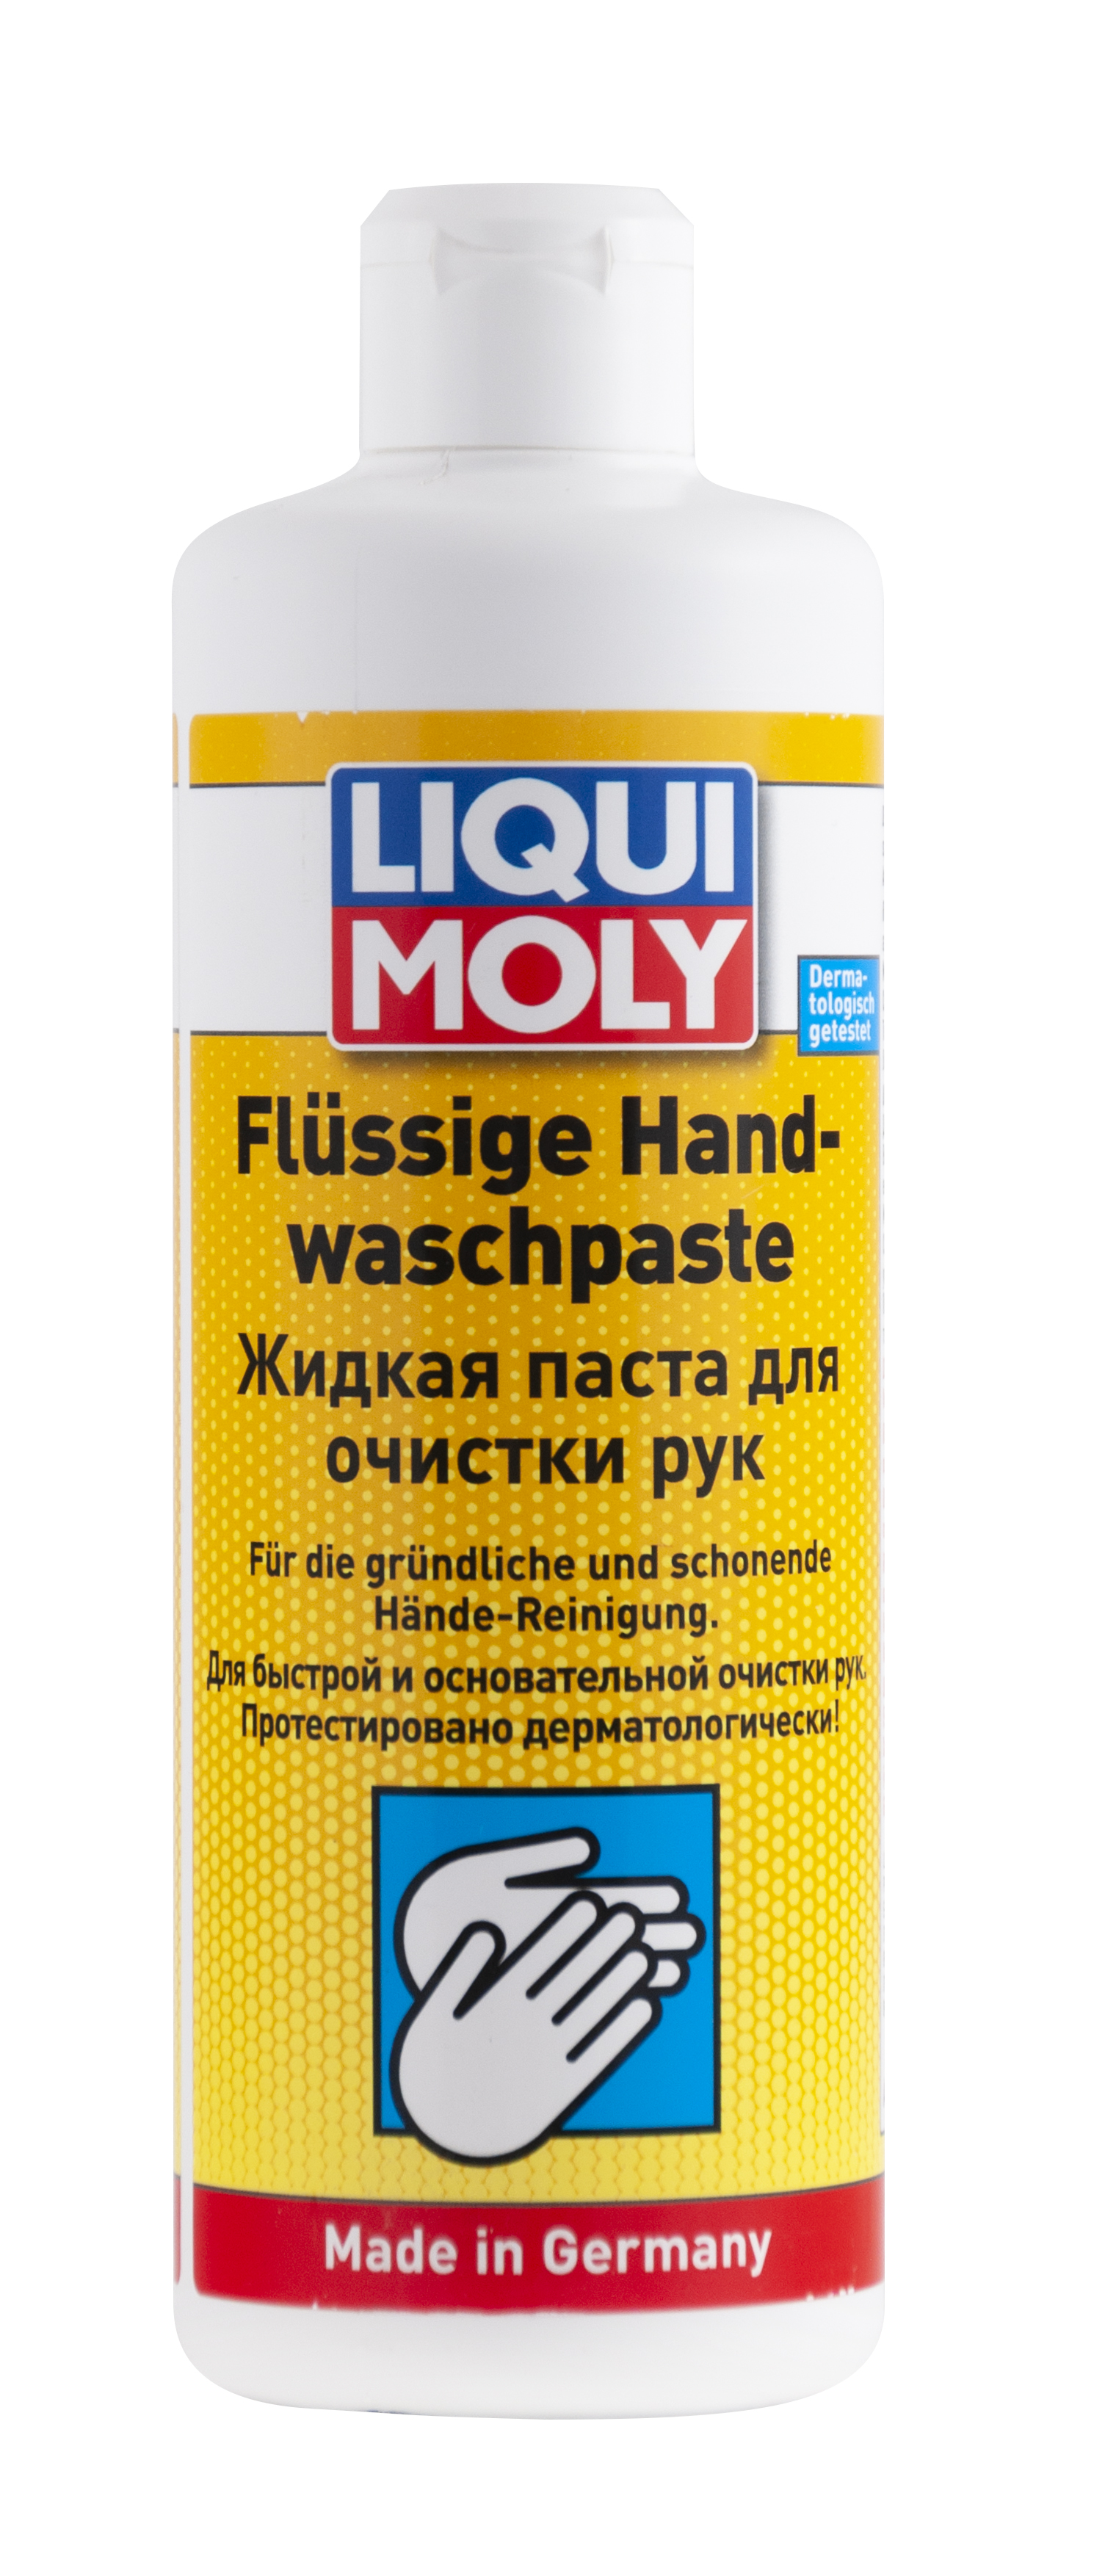 Жидкая паста для очистки рук Liqui Moly Flussige Hand-Wasch-Paste